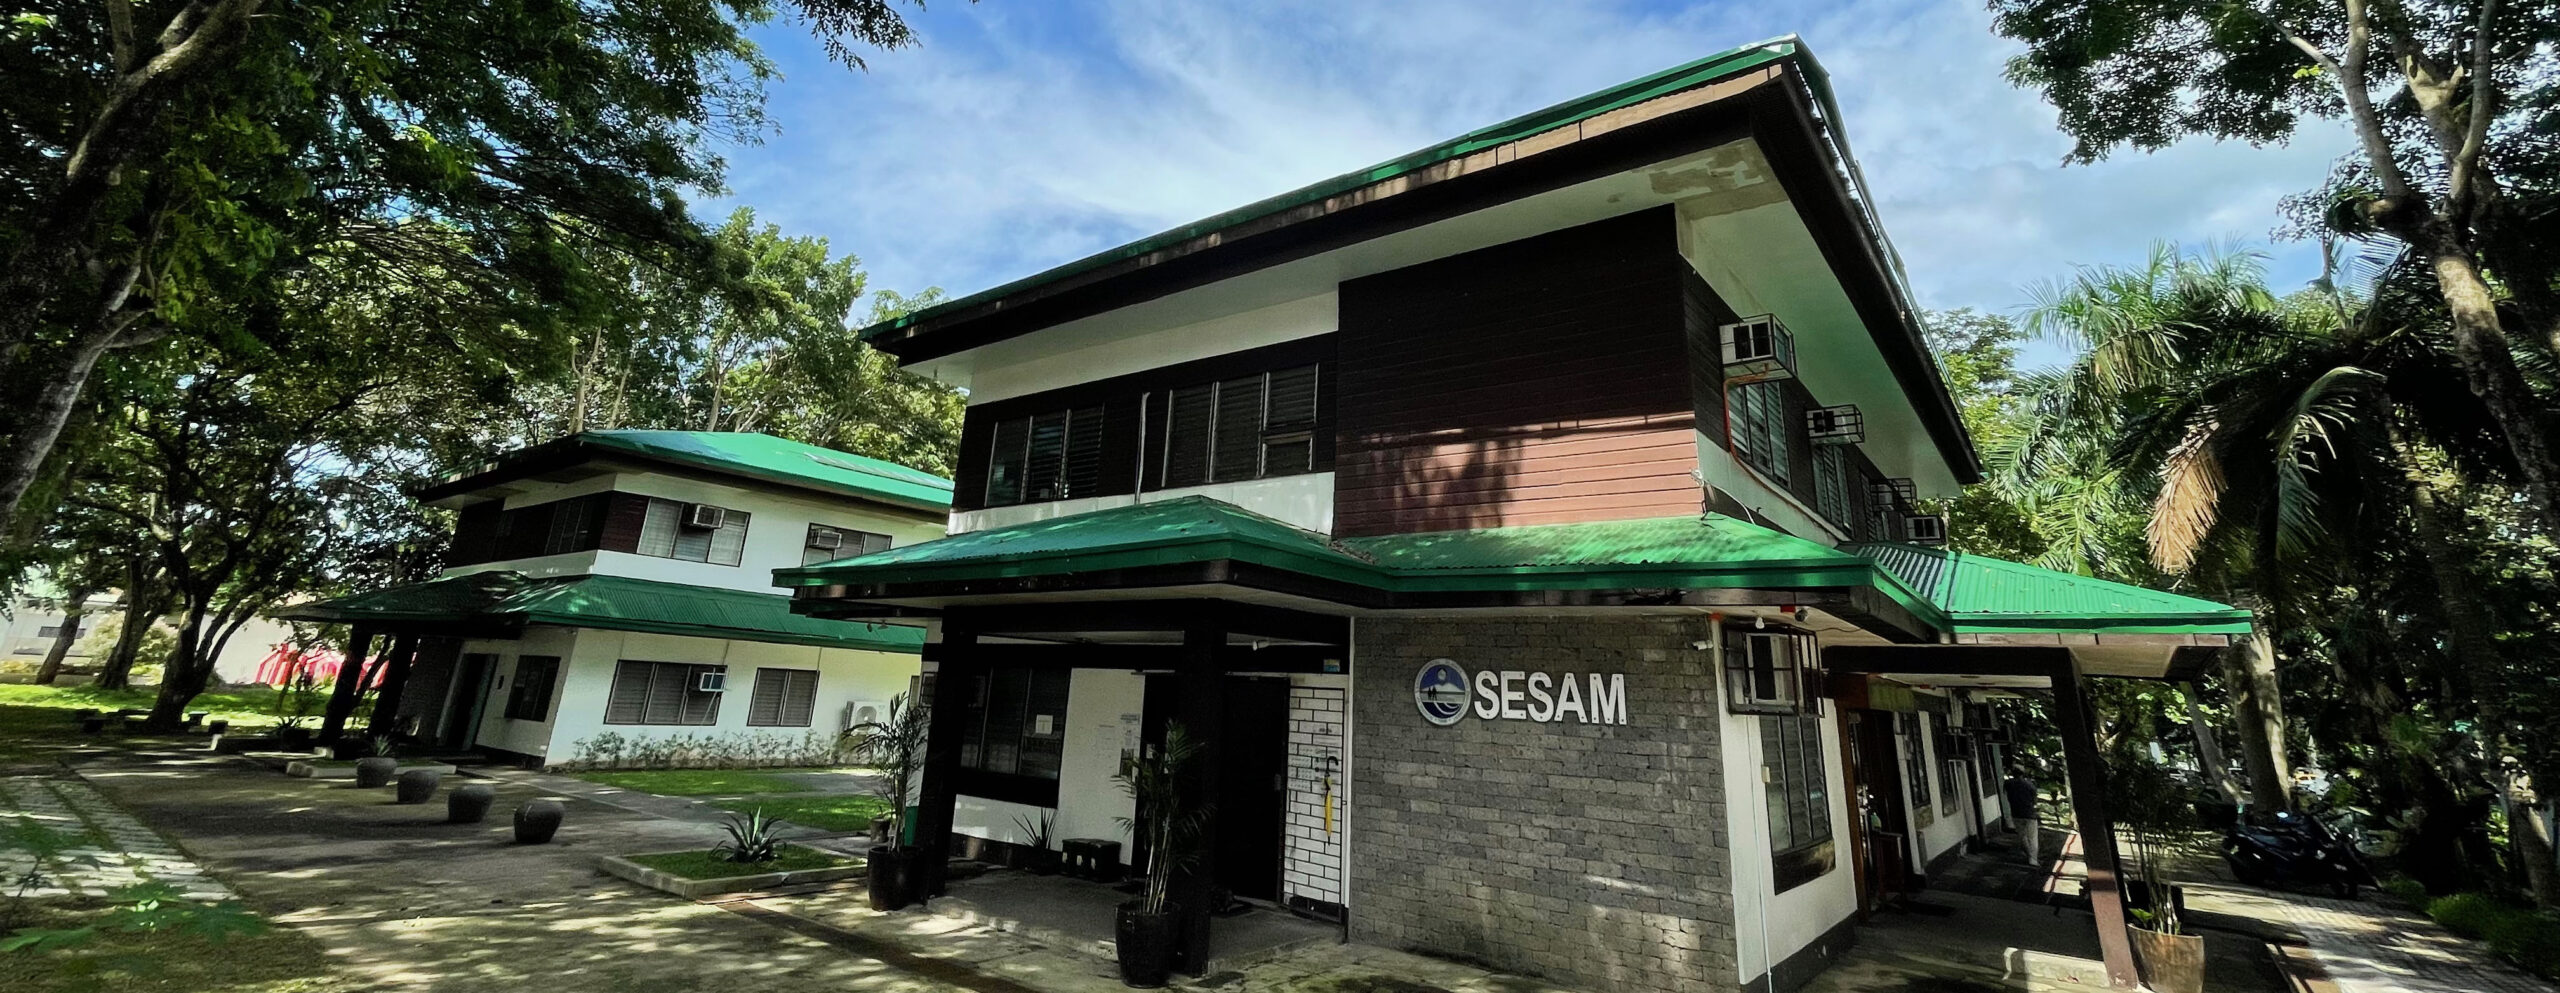 SESAM_building (1)